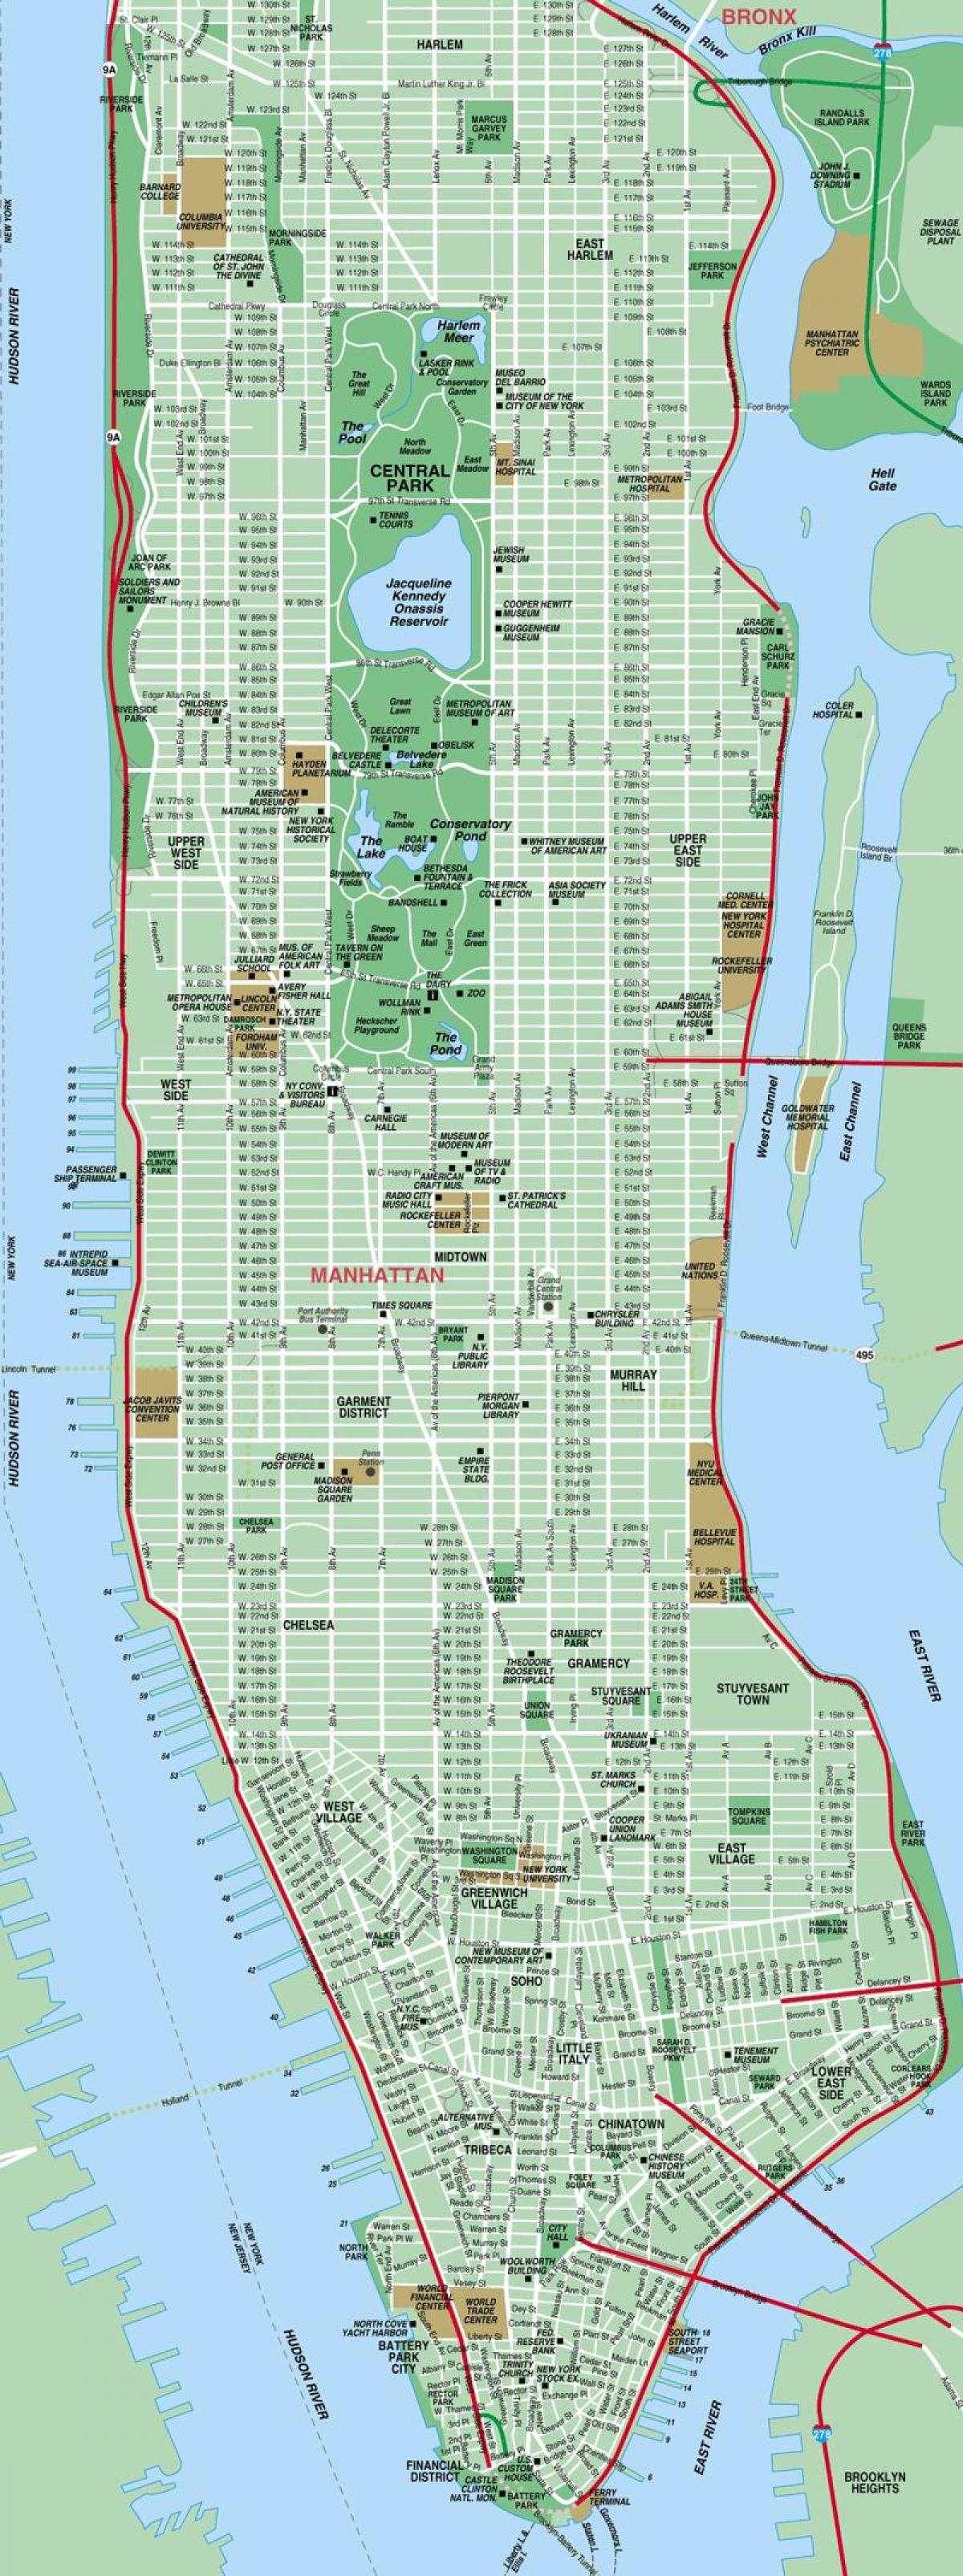 მანჰეტენის ქუჩის რუკა მაღალი დეტალურად